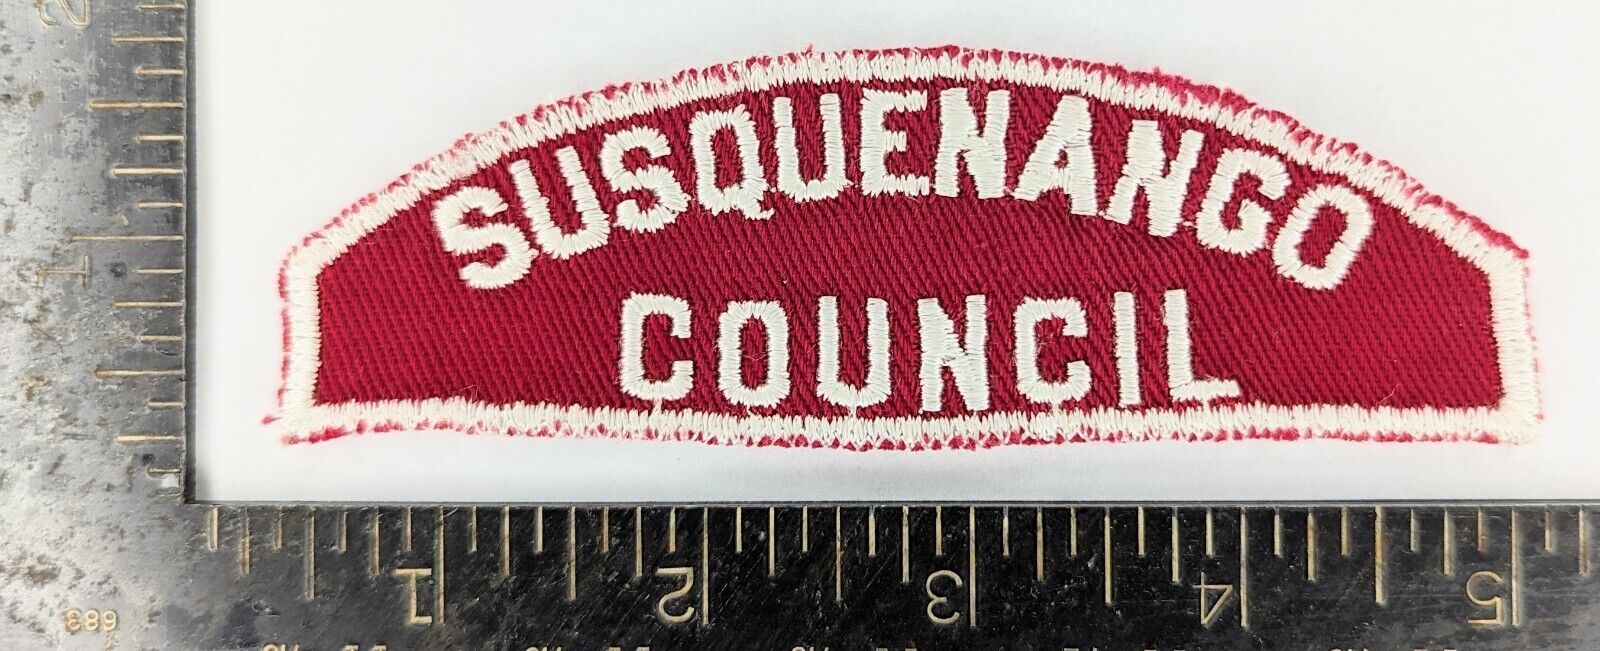 SUSQUENANGO Council T-3(?) - Red & White Full Strip RWS CSP - RARE VTG NR